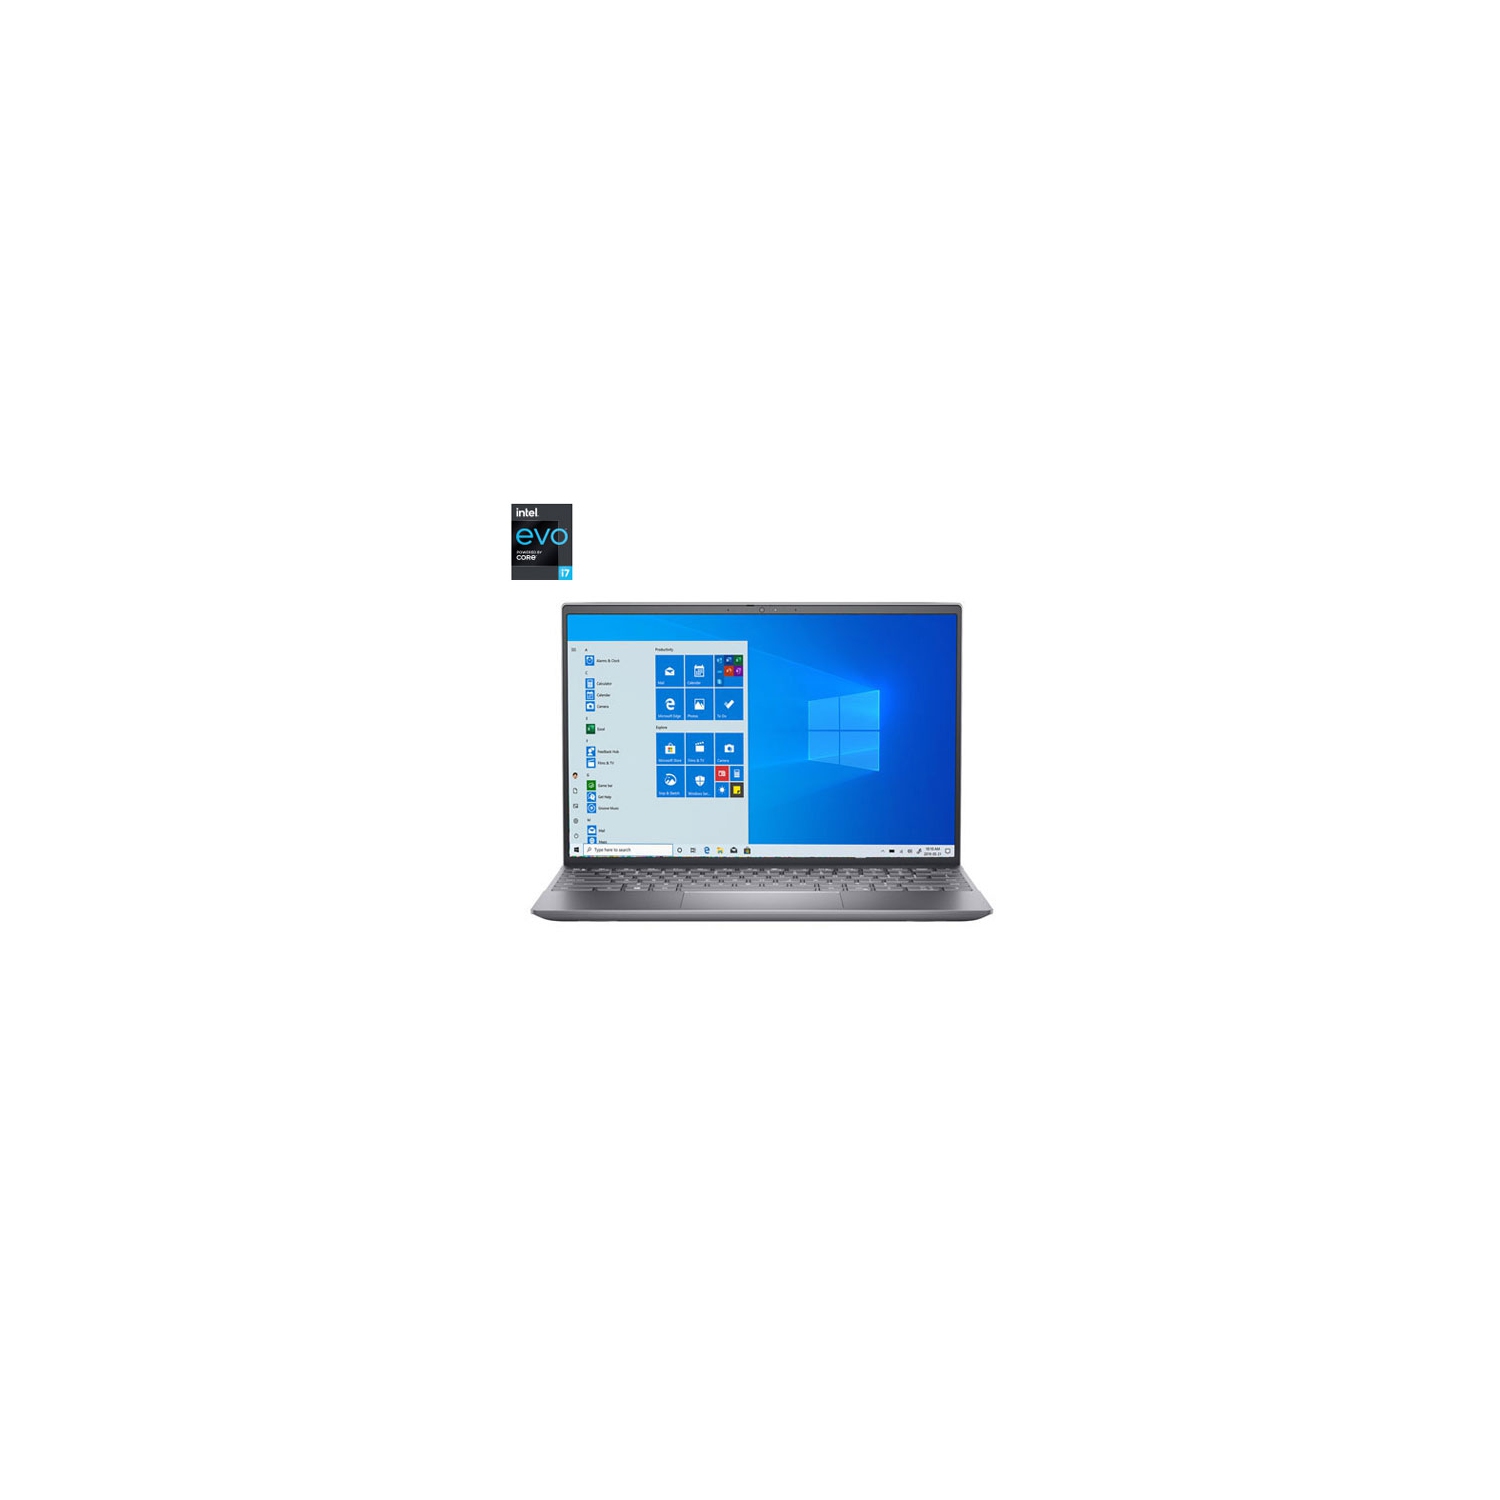 Dell Inspiron 13 13.3" Laptop - Silver (11th Gen Intel Core i7-11390H/512GB SSD/16GB RAM/Windows 10) - Open Box